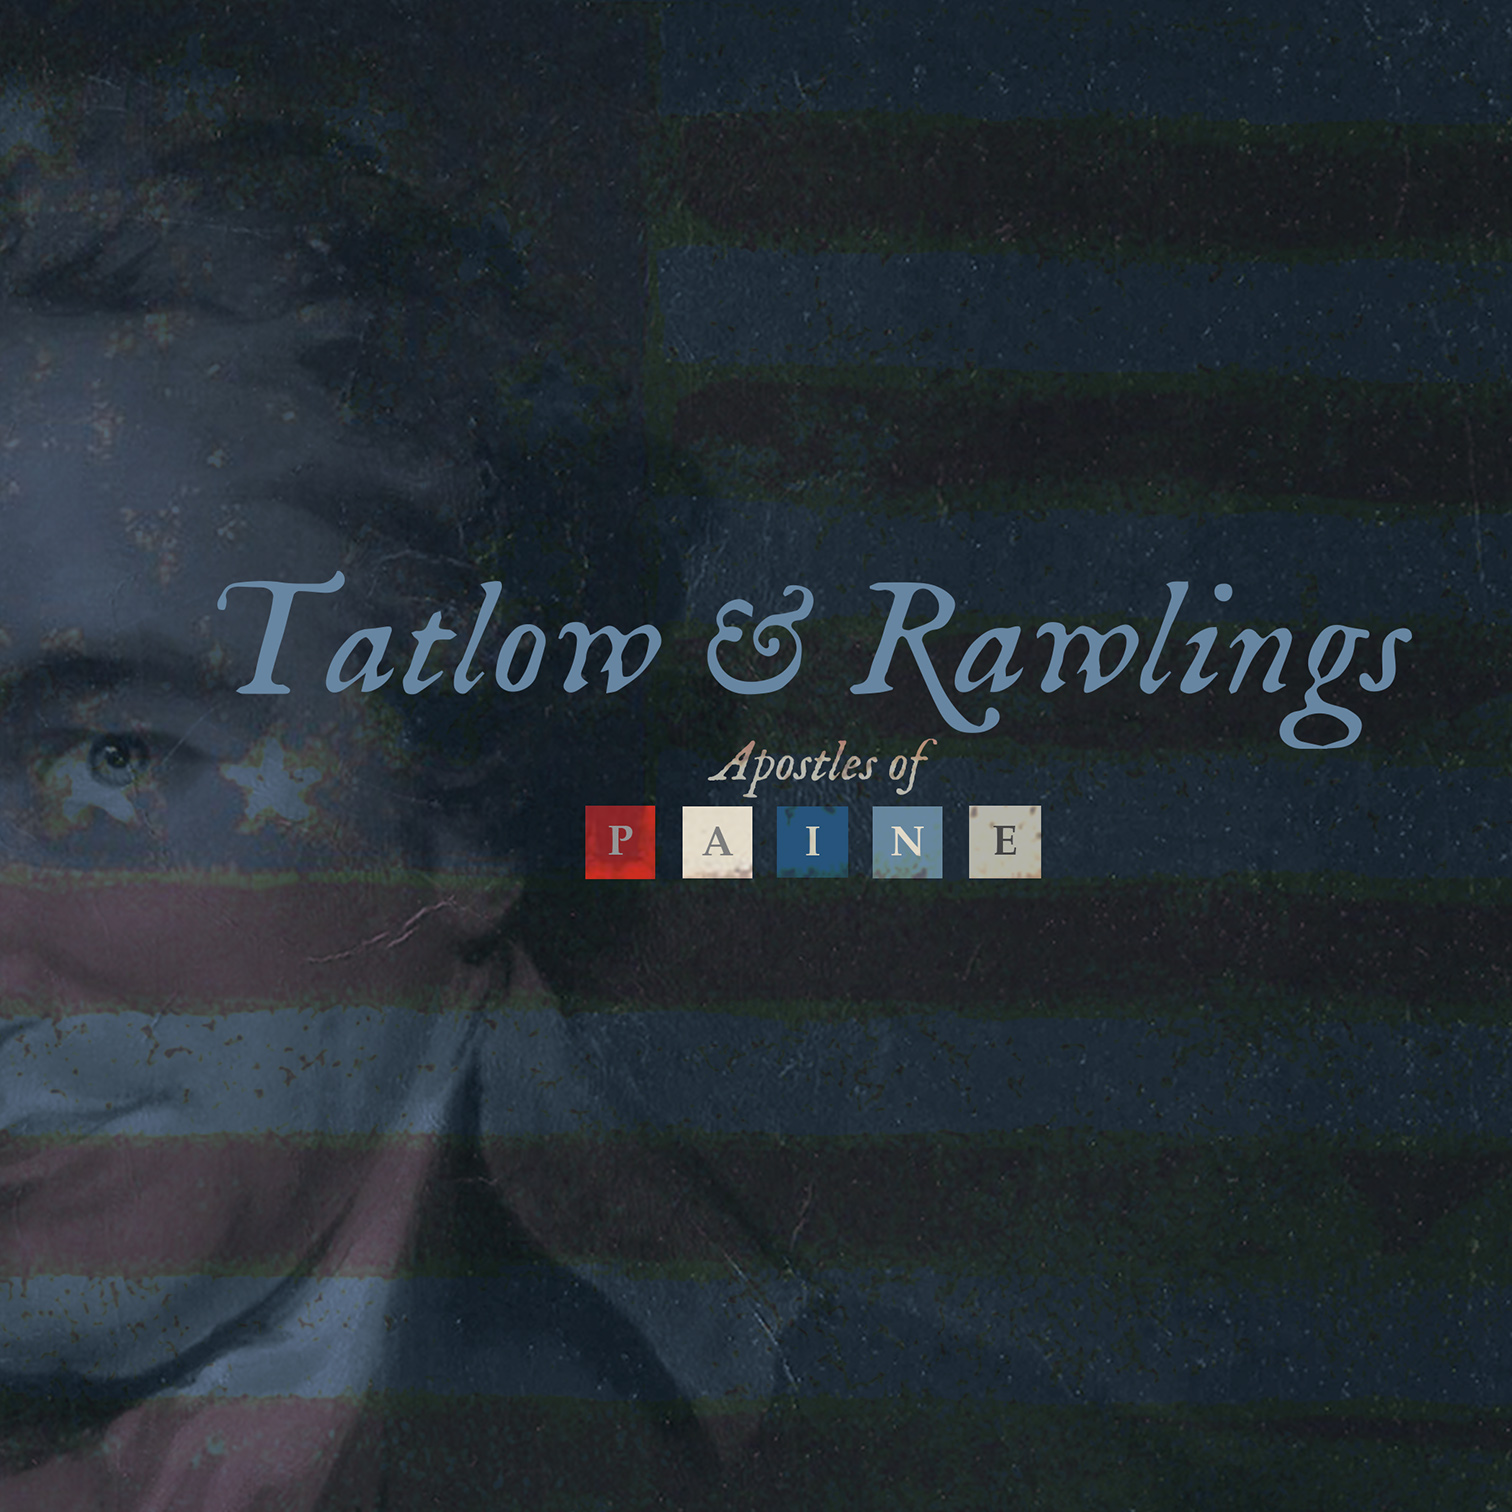 Tatlow-Rawlings-icon